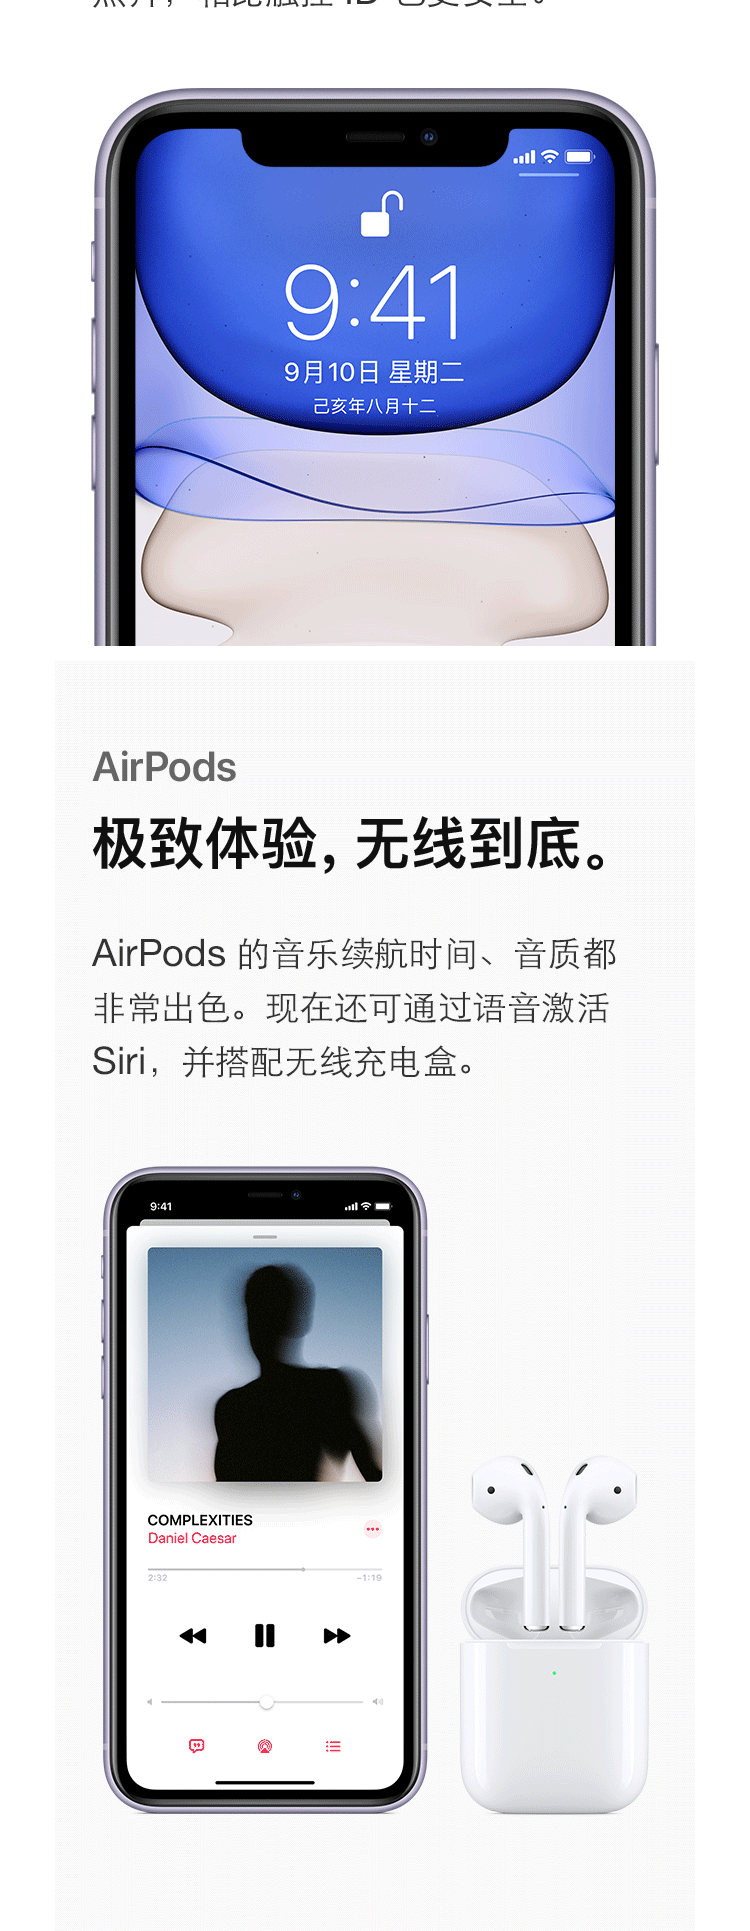 苹果/APPLE 新品 iPhone 11 (A2223) 64GB移动联通电信4G手机 双卡双待